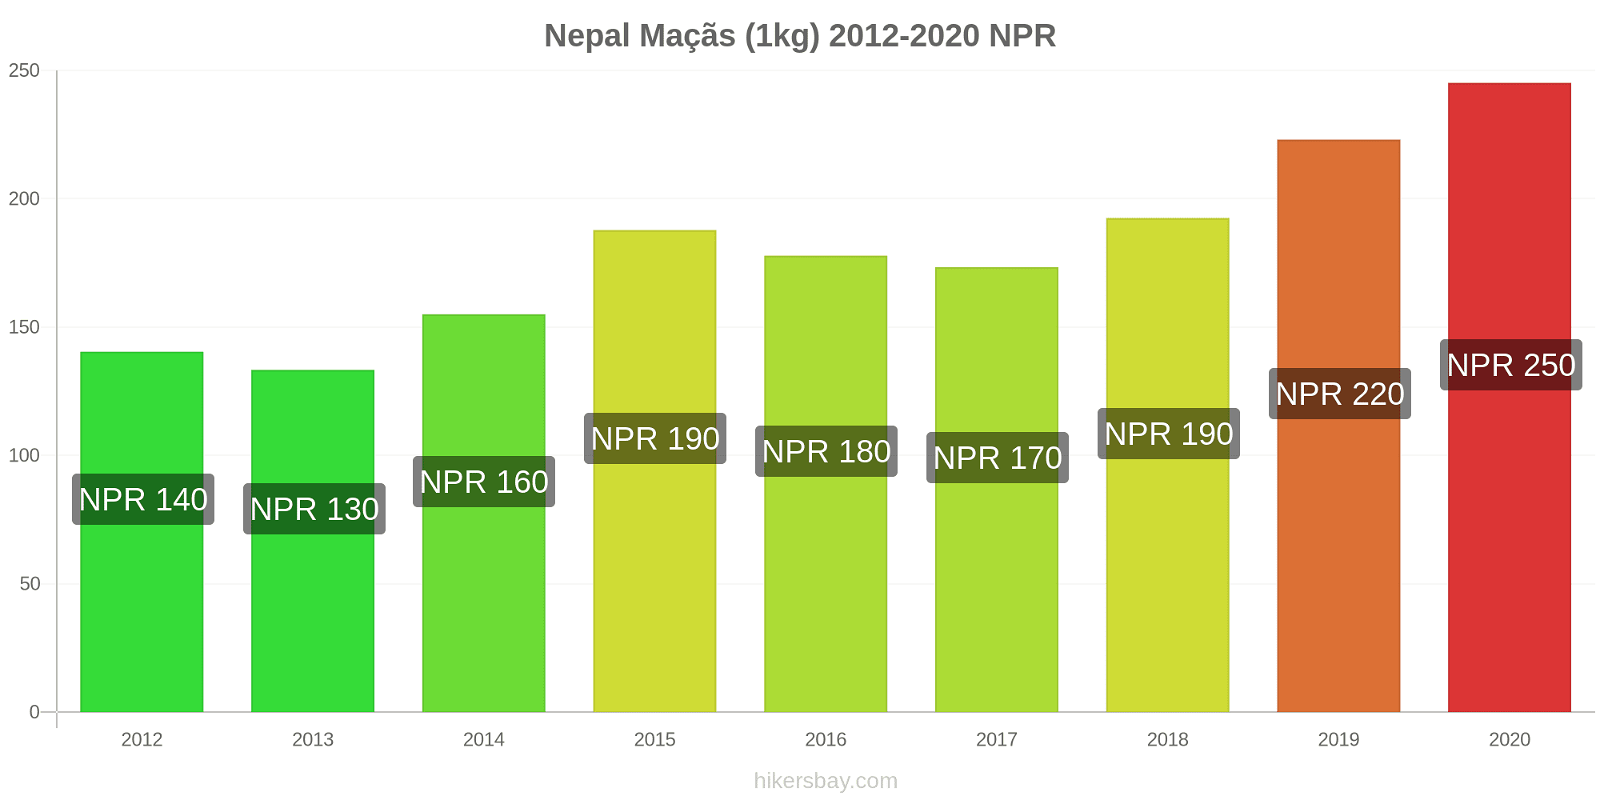 Nepal variação de preço Maçãs (1kg) hikersbay.com